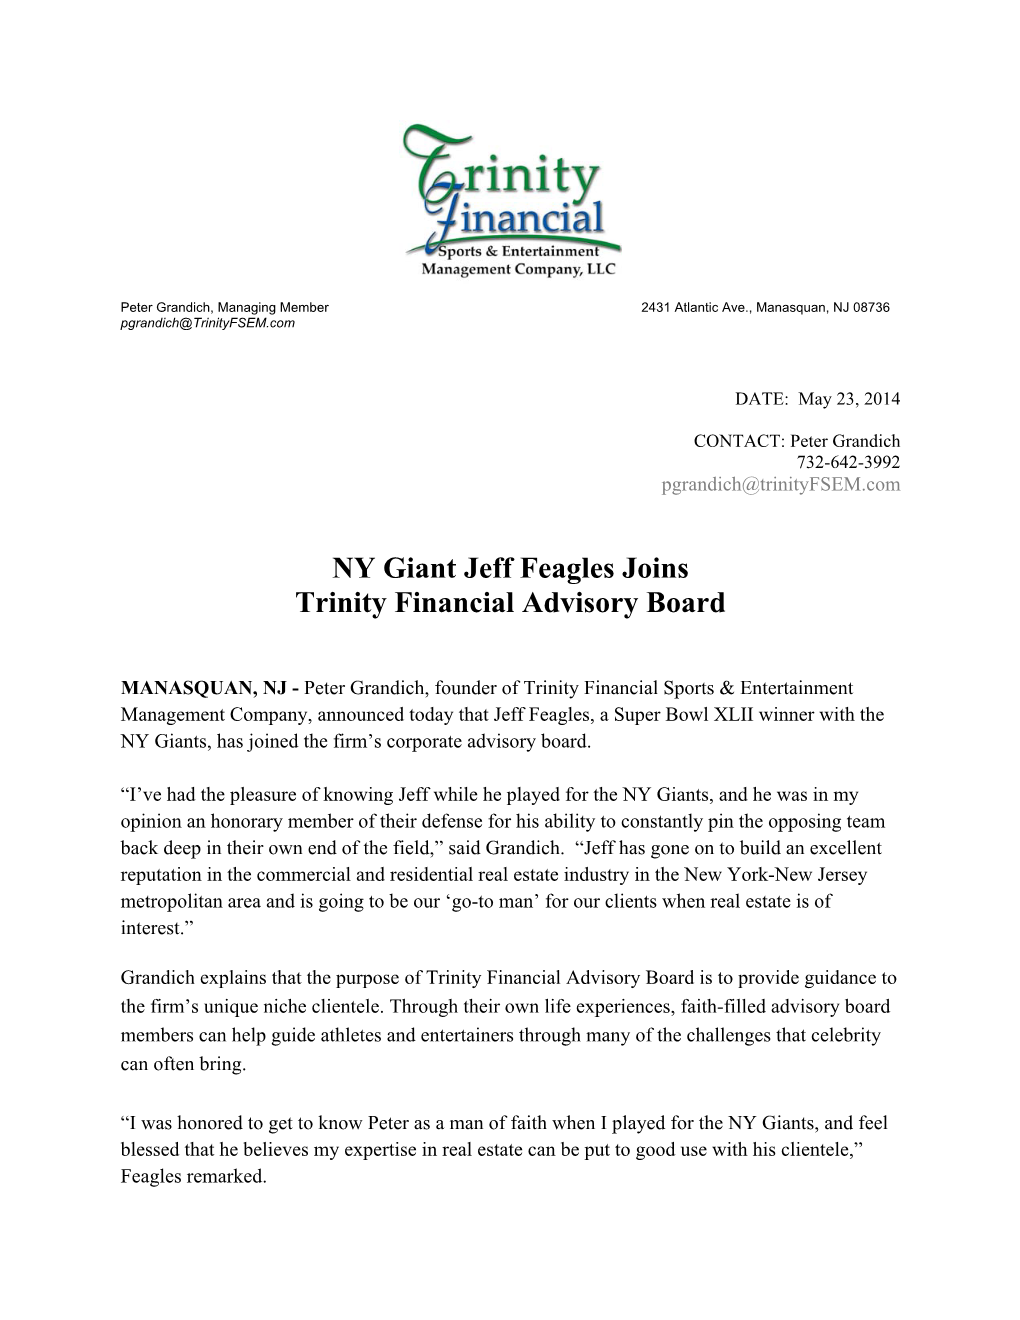 NY Giant Jeff Feagles Joins Trinity Financial Advisory Board